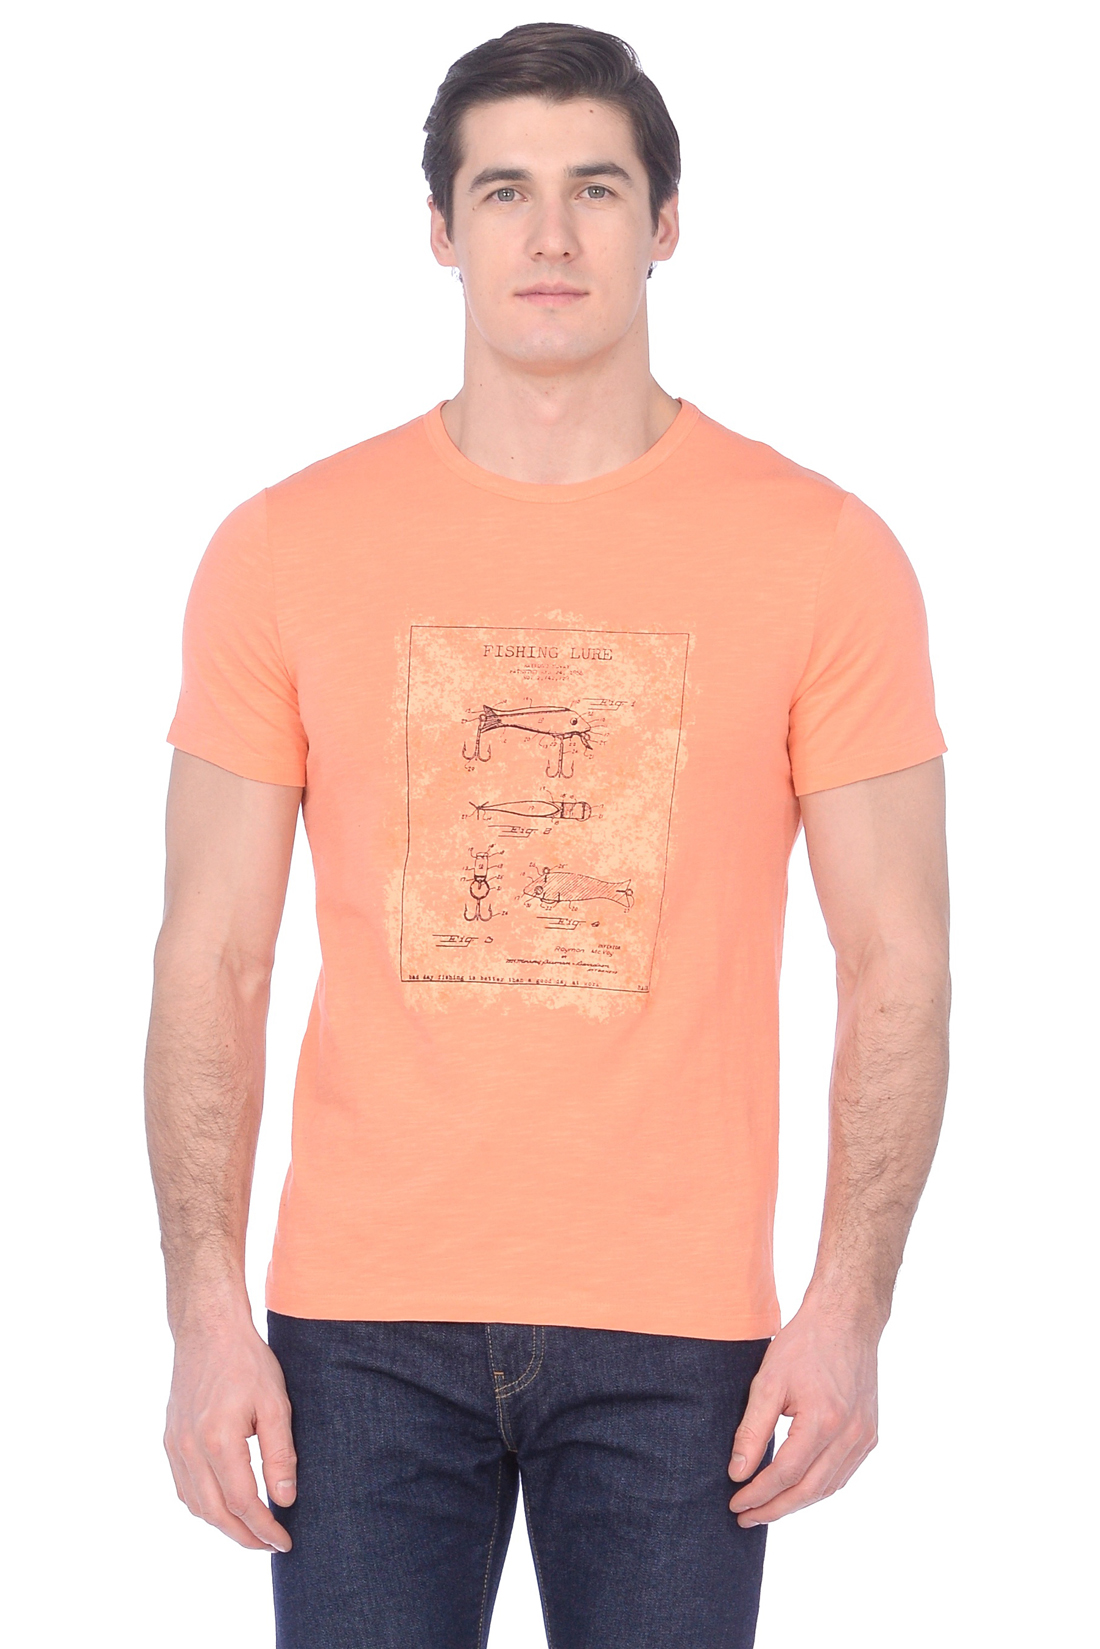 Футболка с винтажным принтом (арт. baon B739030), размер XL, цвет оранжевый Футболка с винтажным принтом (арт. baon B739030) - фото 4